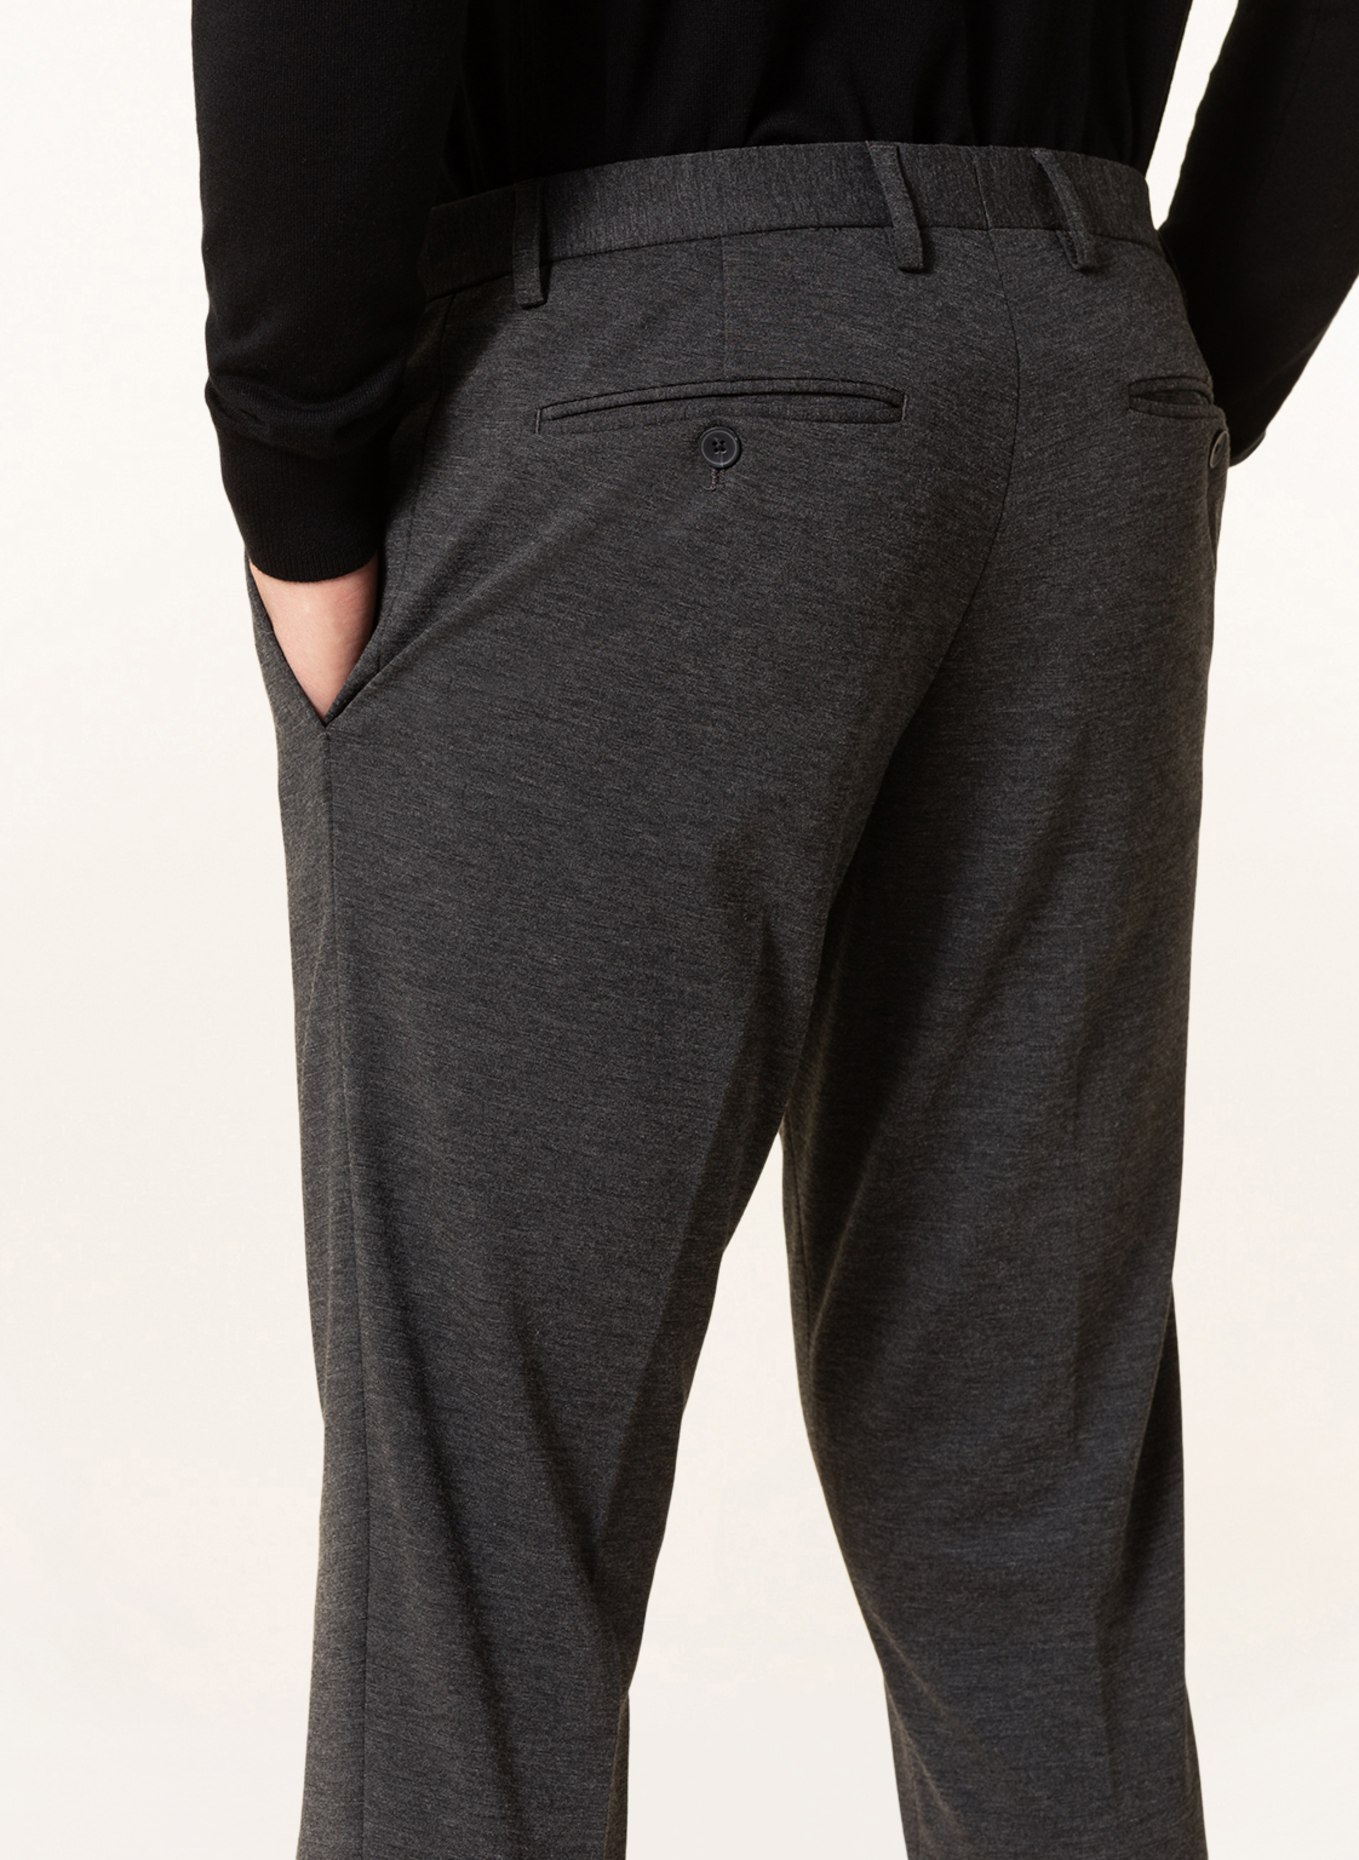 PAUL Suit trousers slim fit, Color: 750 Charcoal (Image 6)